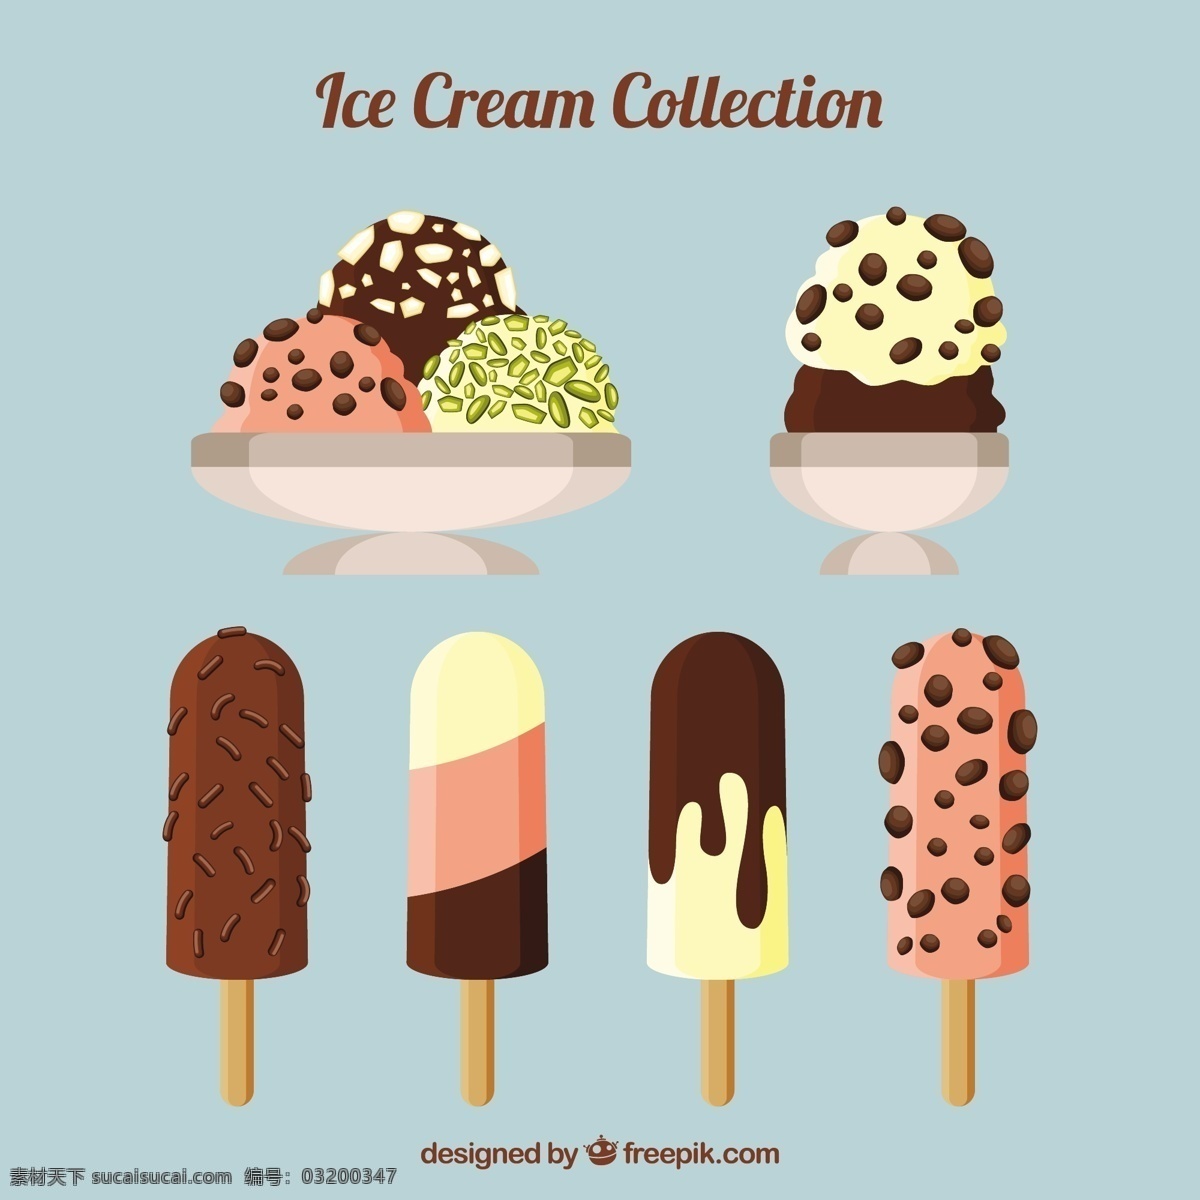 美味 冰淇淋 精选 食品 夏季 颜色 平板 冰 甜 平的设计 甜点 奶油 吃 季节 伟大 口味 冰棒 彩色